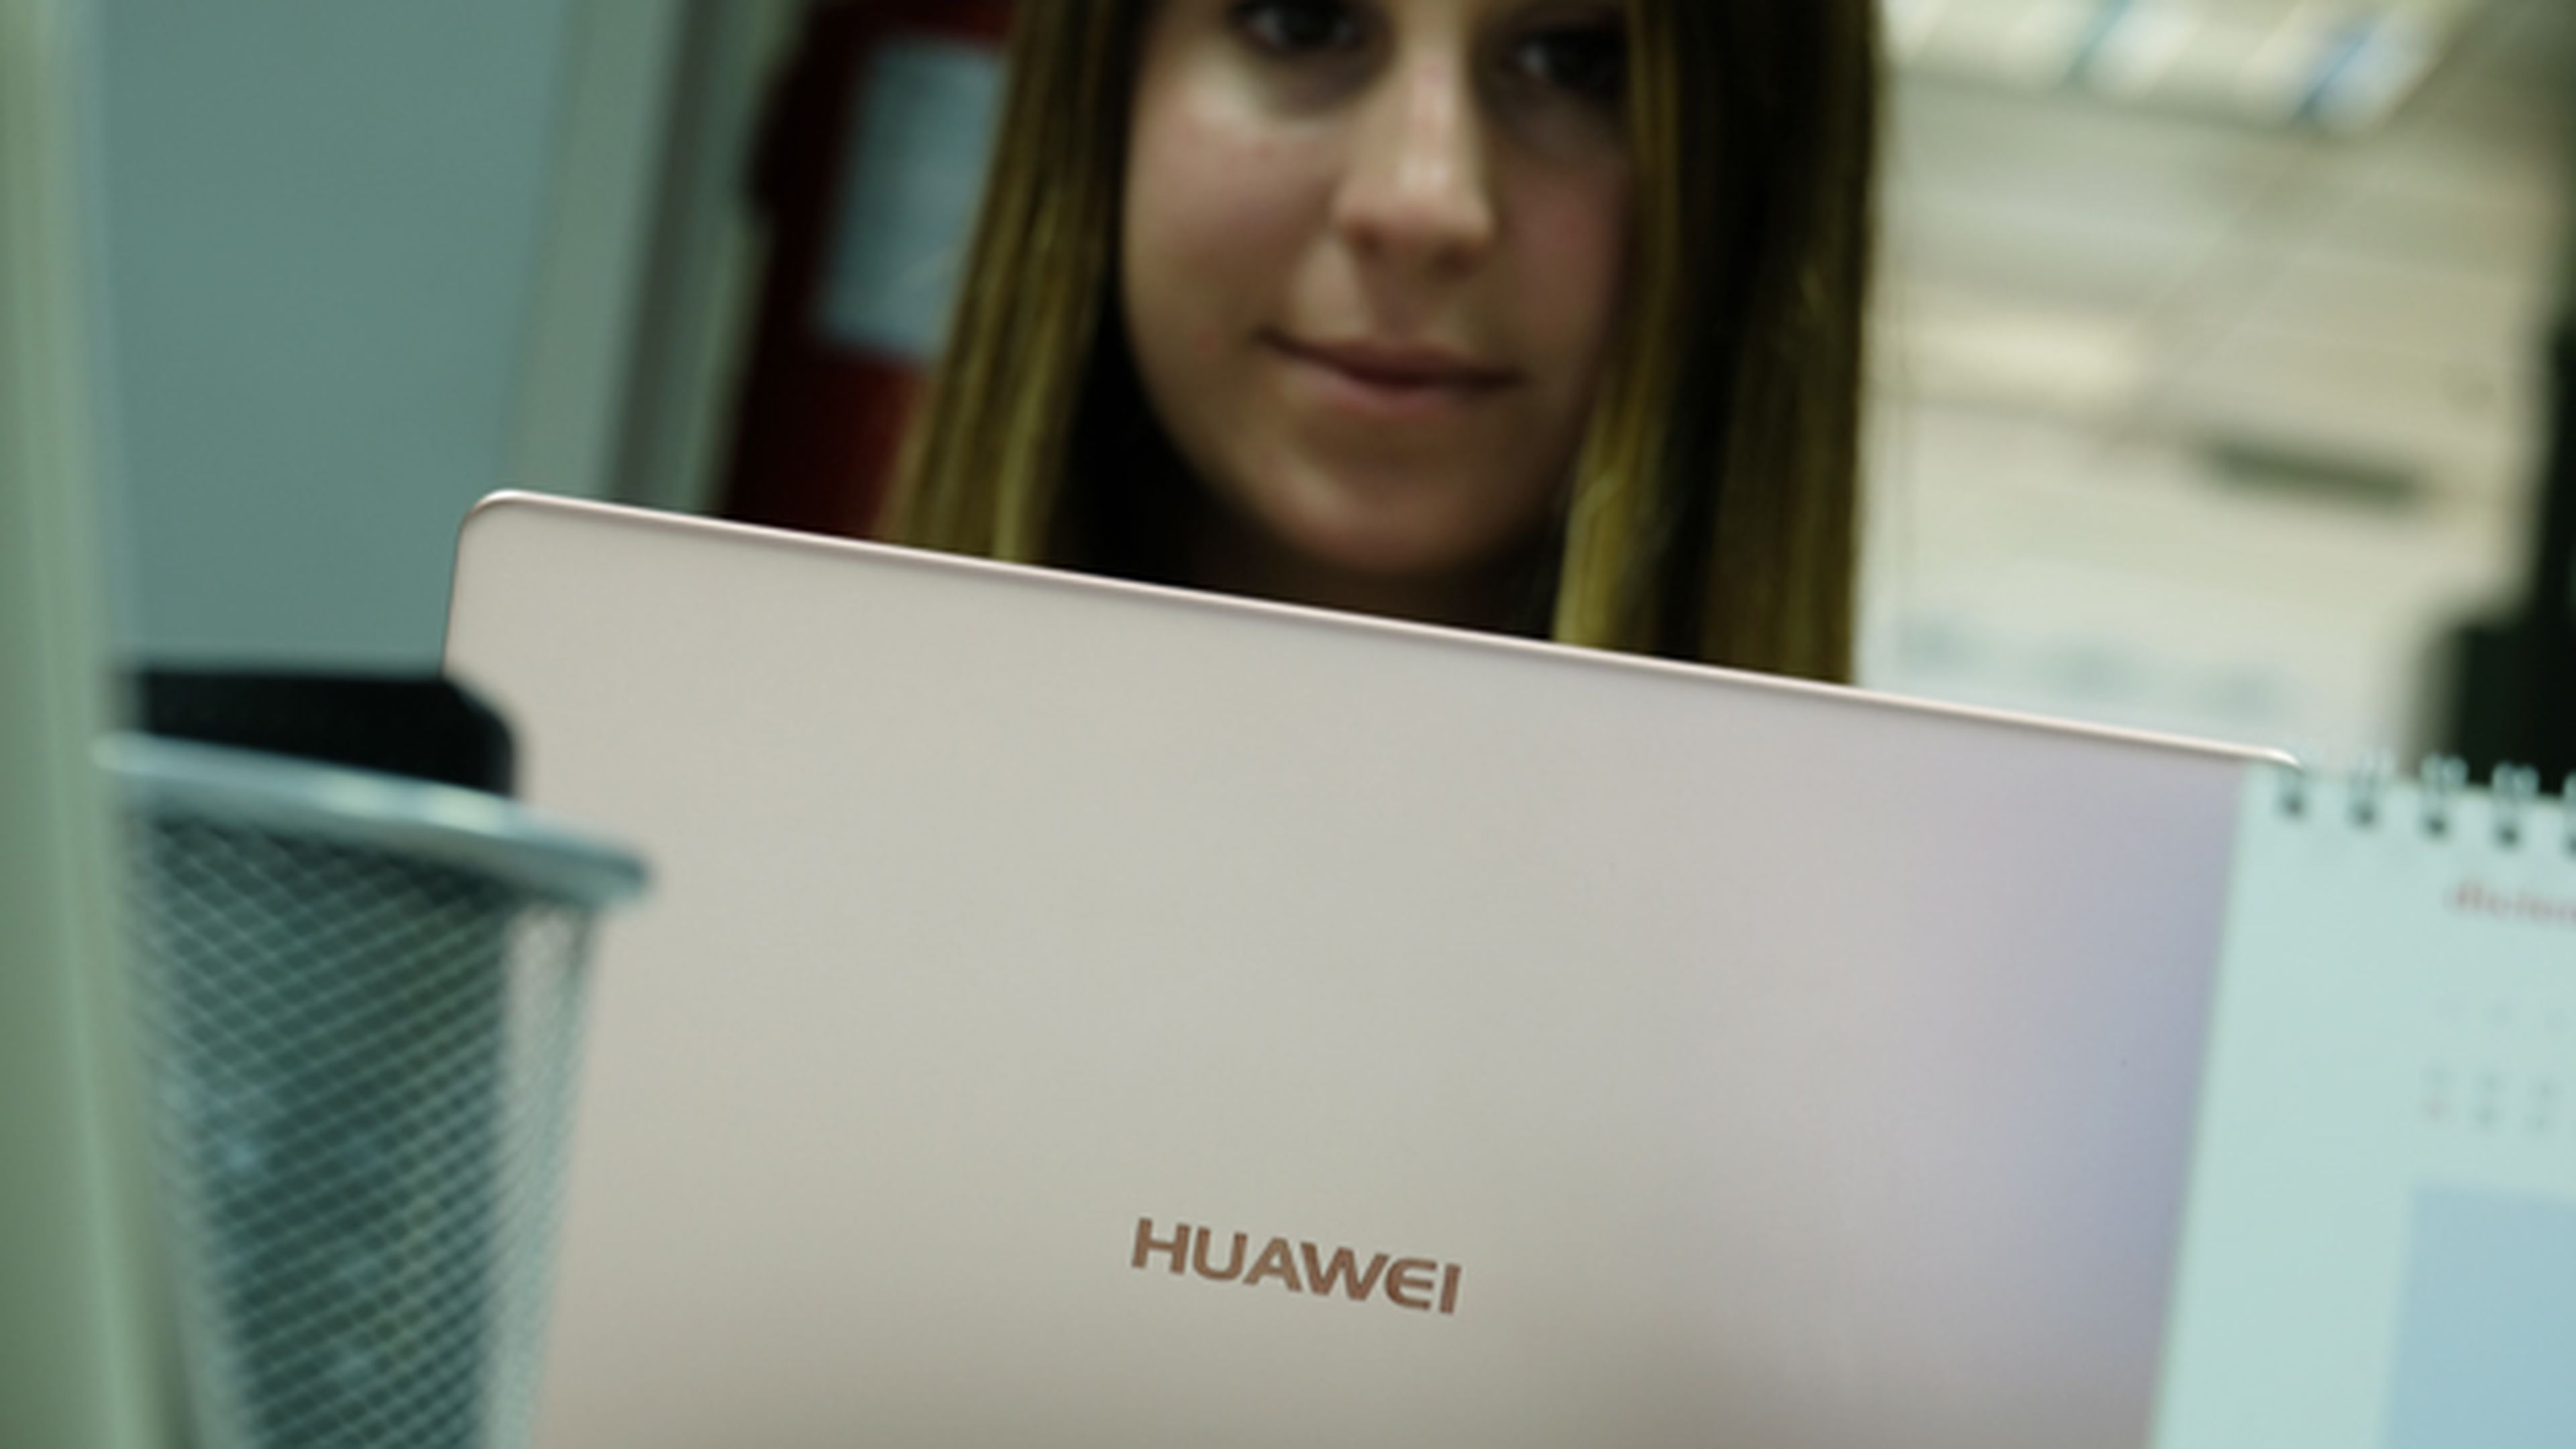 El MateBook X es el primer ordenador portátil de Huawei, y lo hemos probado a fondo